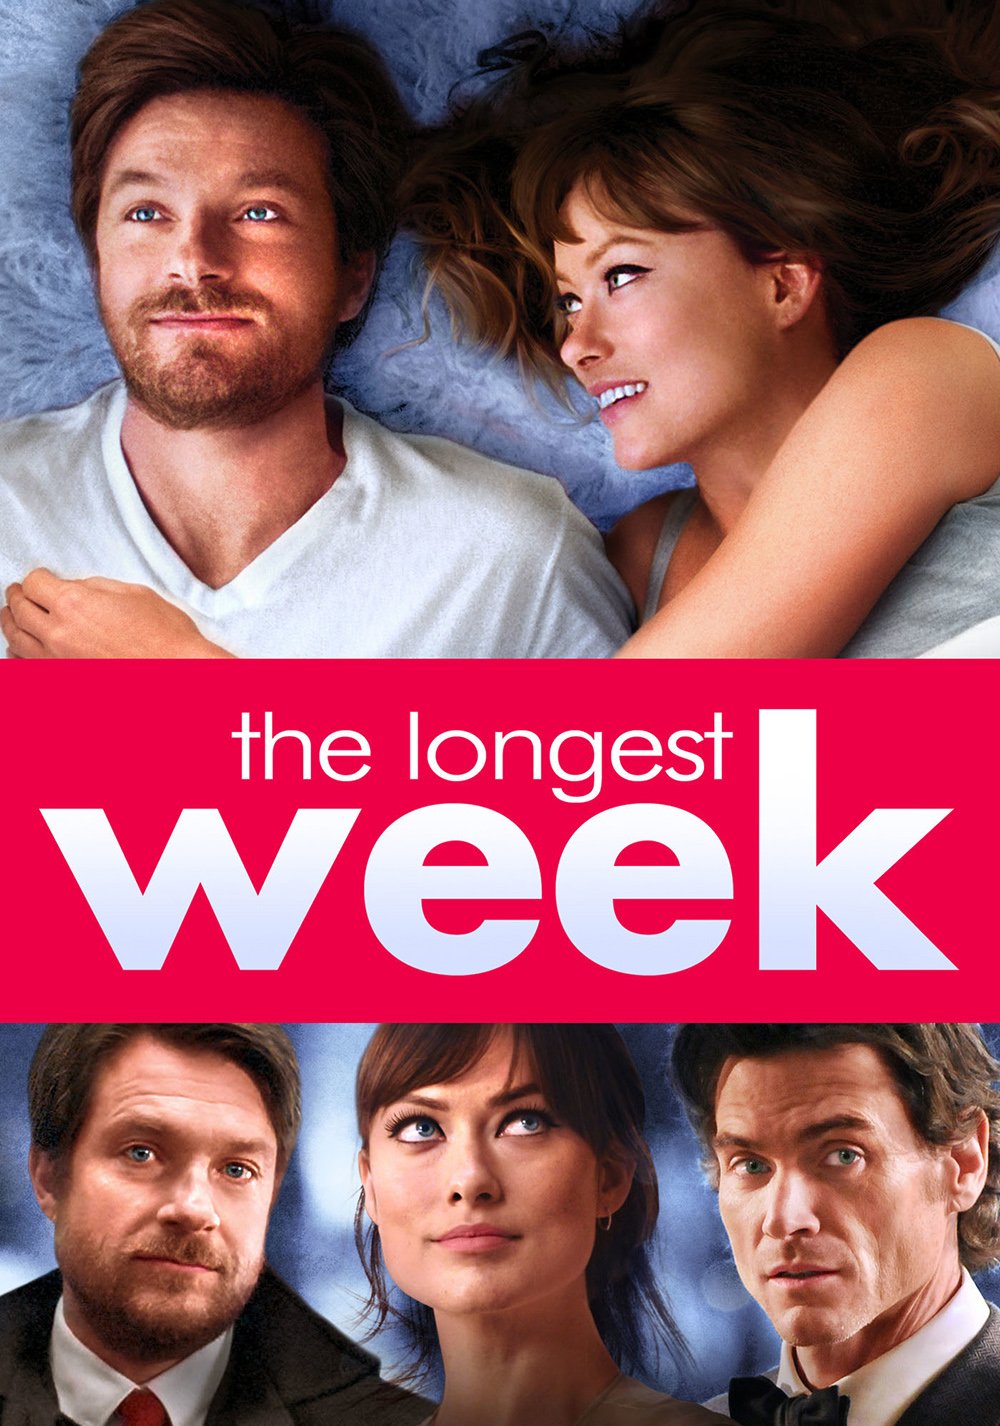 the longest week movie review